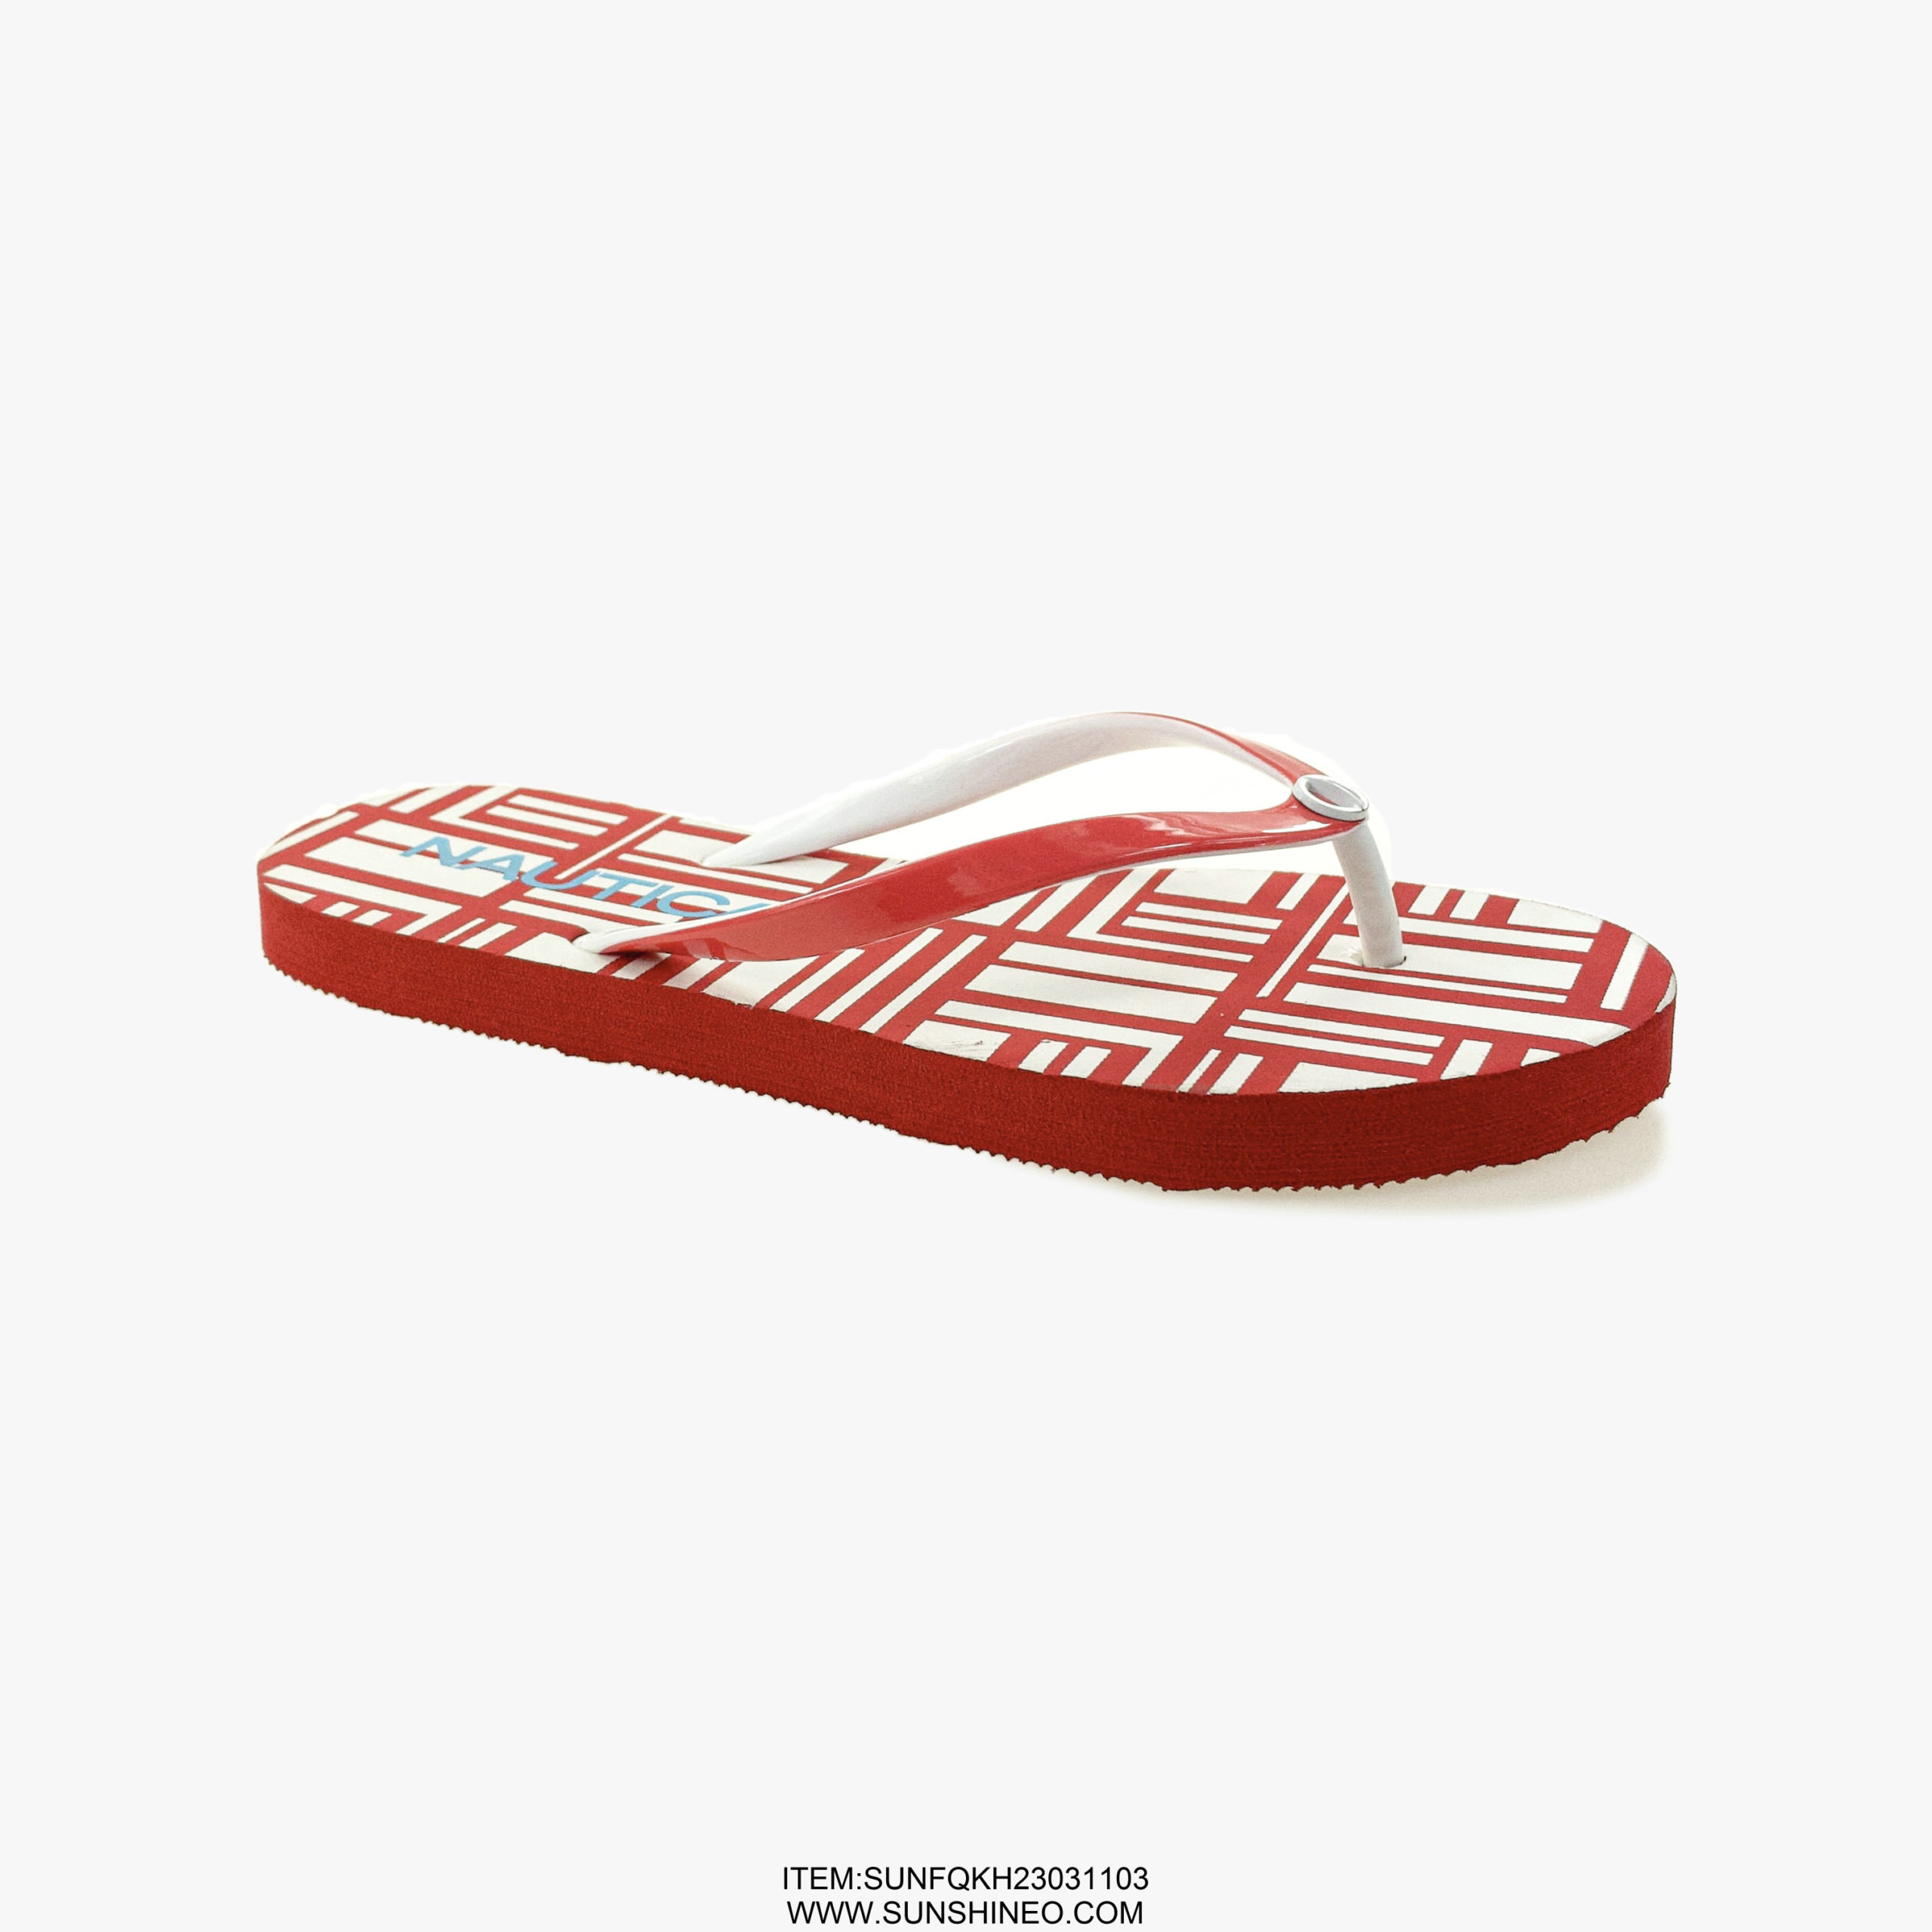 SUNFQKH23031103 flip flop sandals